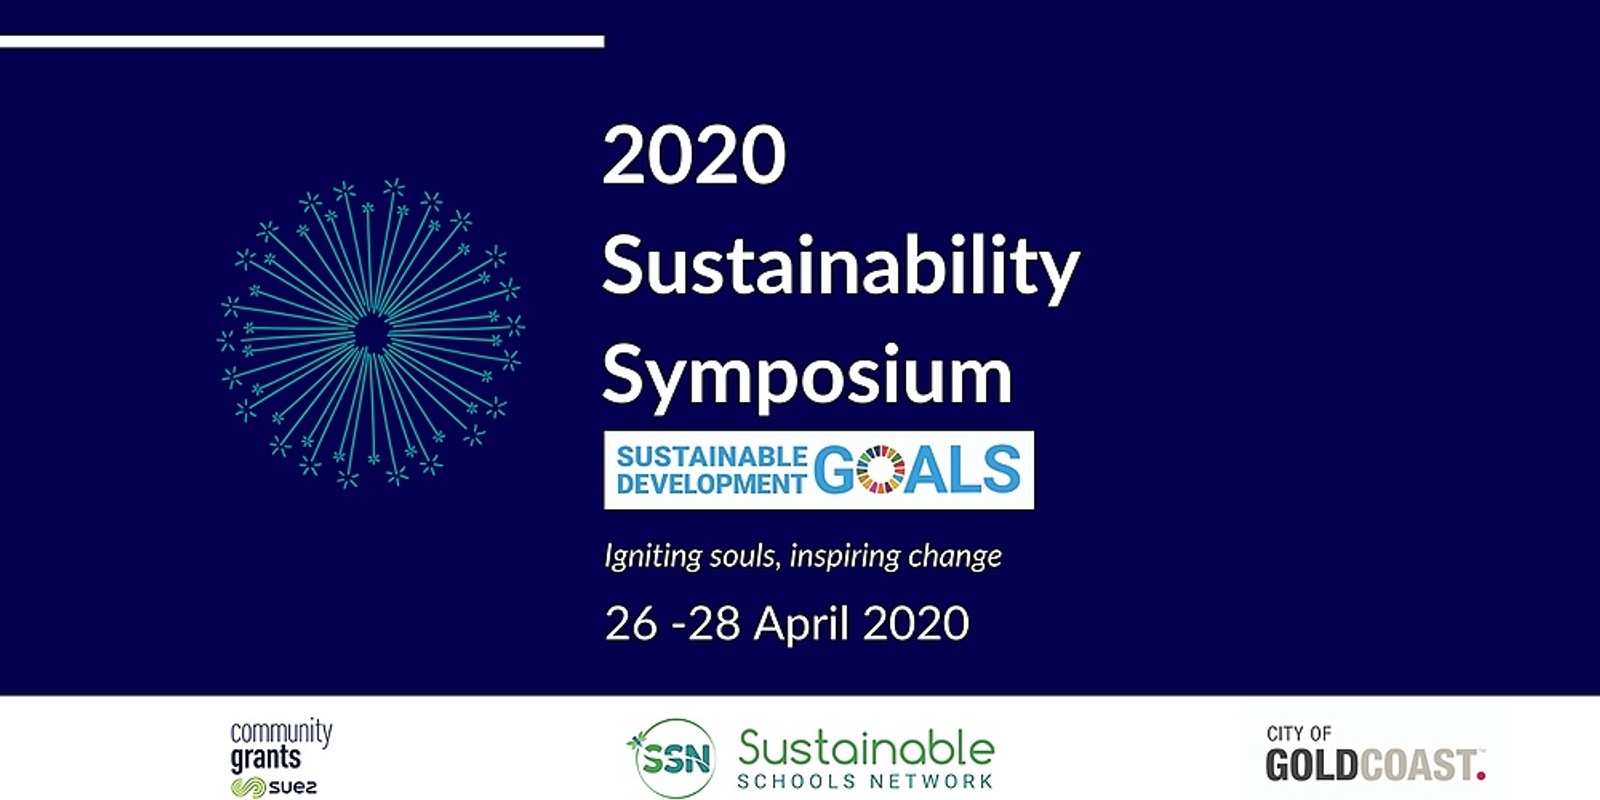 Banner image for 2020 Sustainability Symposium